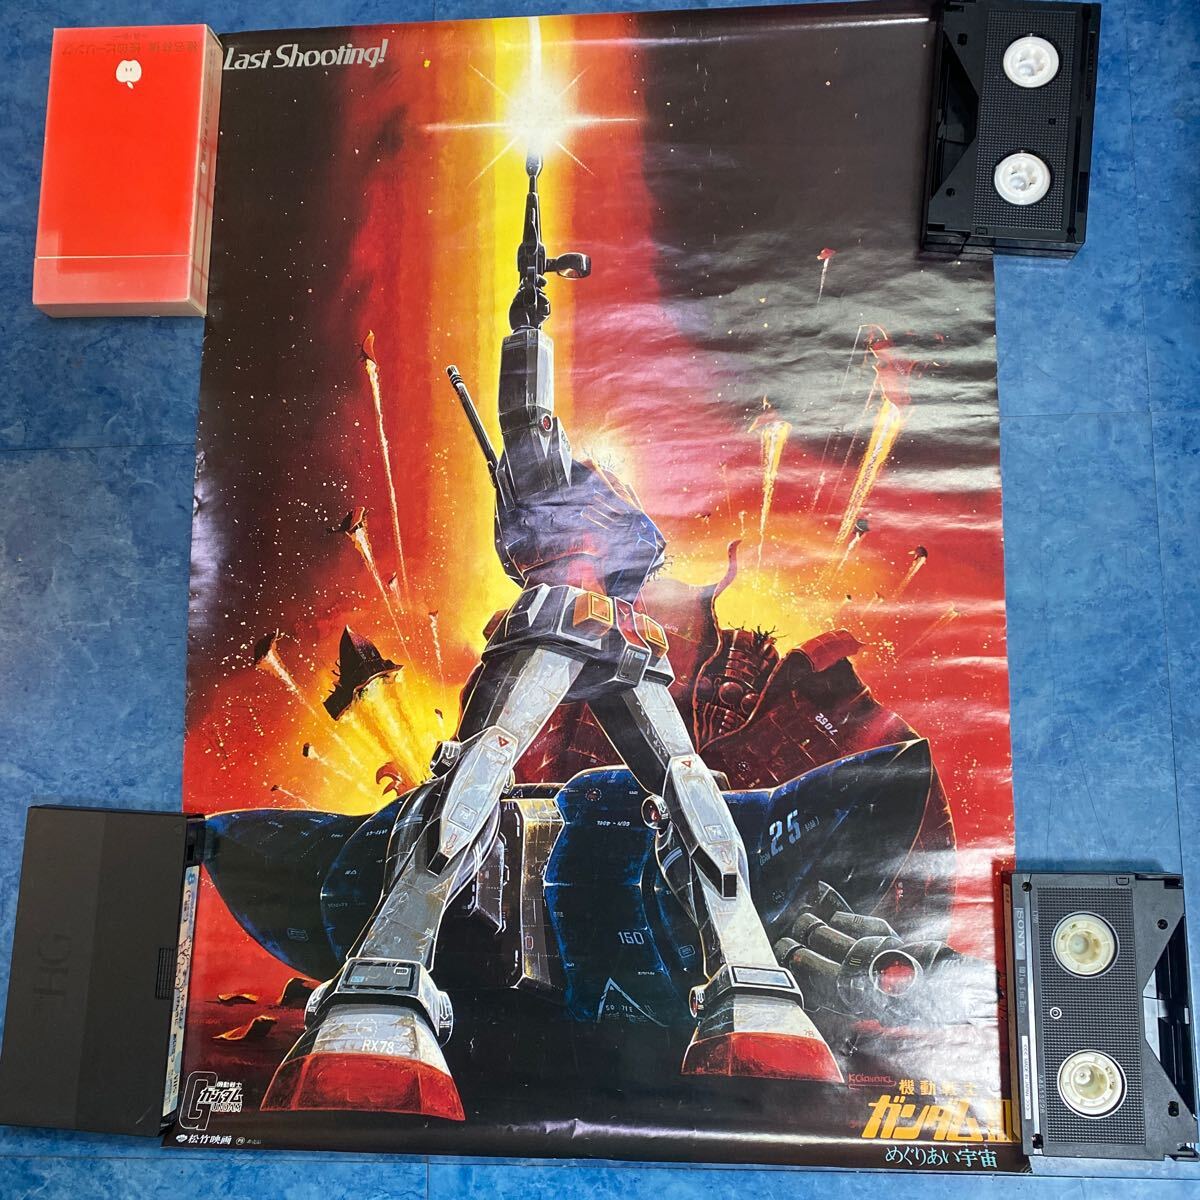 3.25* подлинная вещь Mobile Suit Gundam Ⅲ..... космос *1982 год театр публичный B2 постер не продается *....* Yasuhiko Yoshikazu ** Sunrise * сосна бамбук фильм 